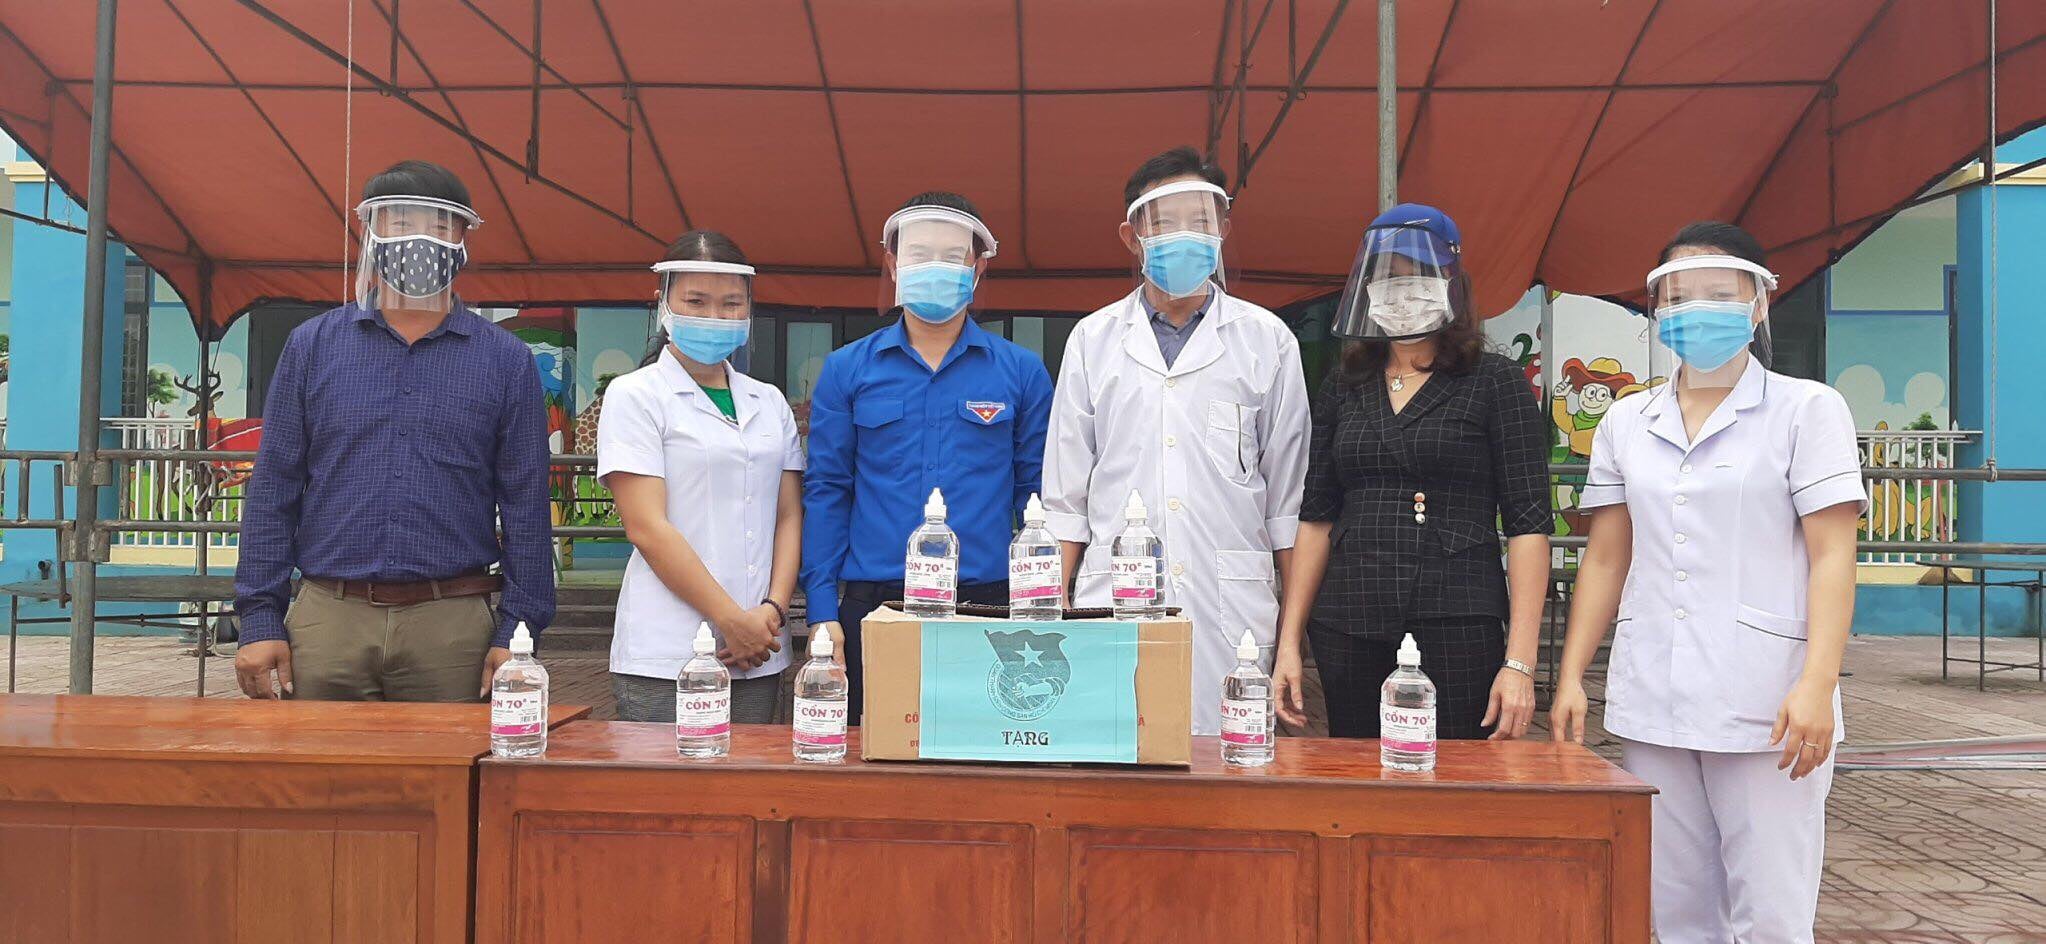 Huyện đoàn trao tặng vatajtuw y tế cho khu cách ly Cẩm Trung